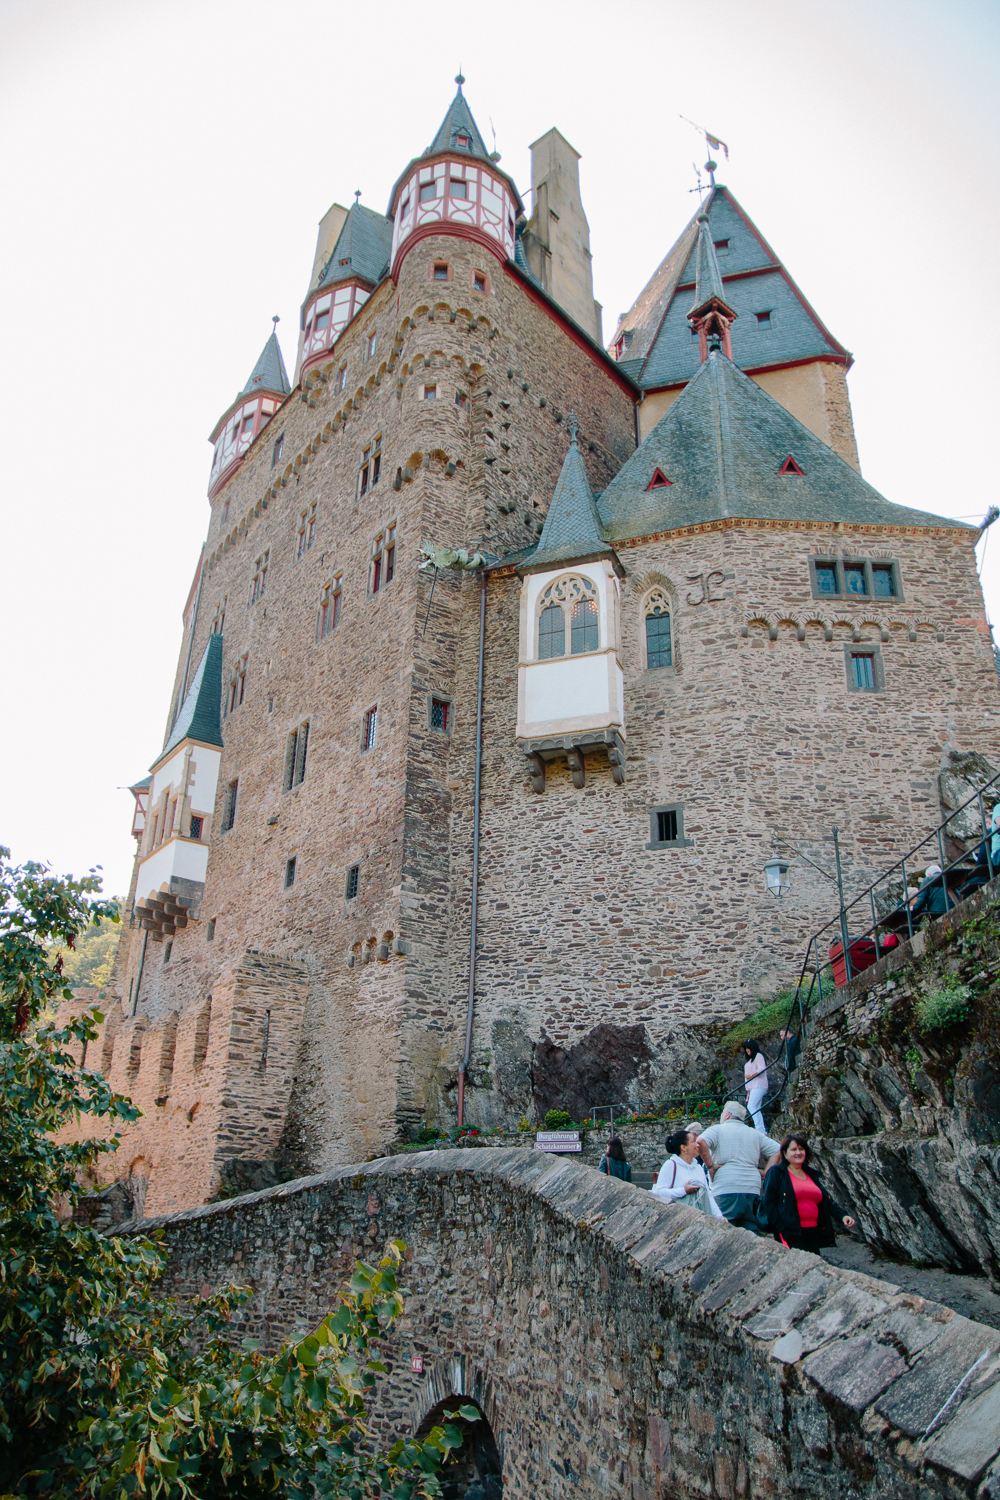 Views over Burg Eltz Castle